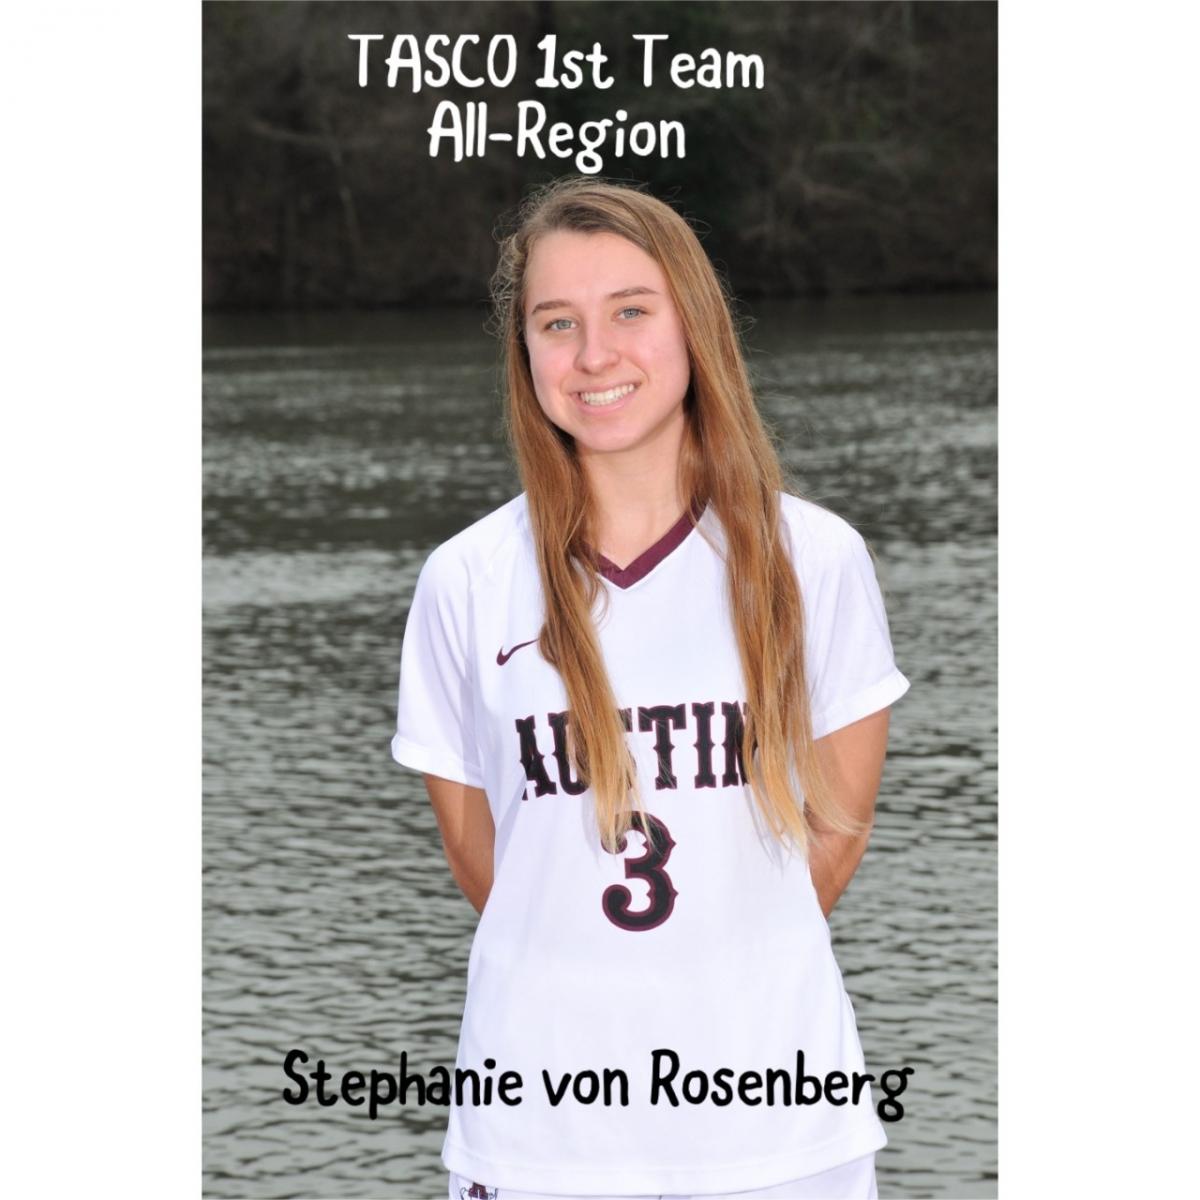 Stephanie von Rosenberg named to TASCO All-Region Team 